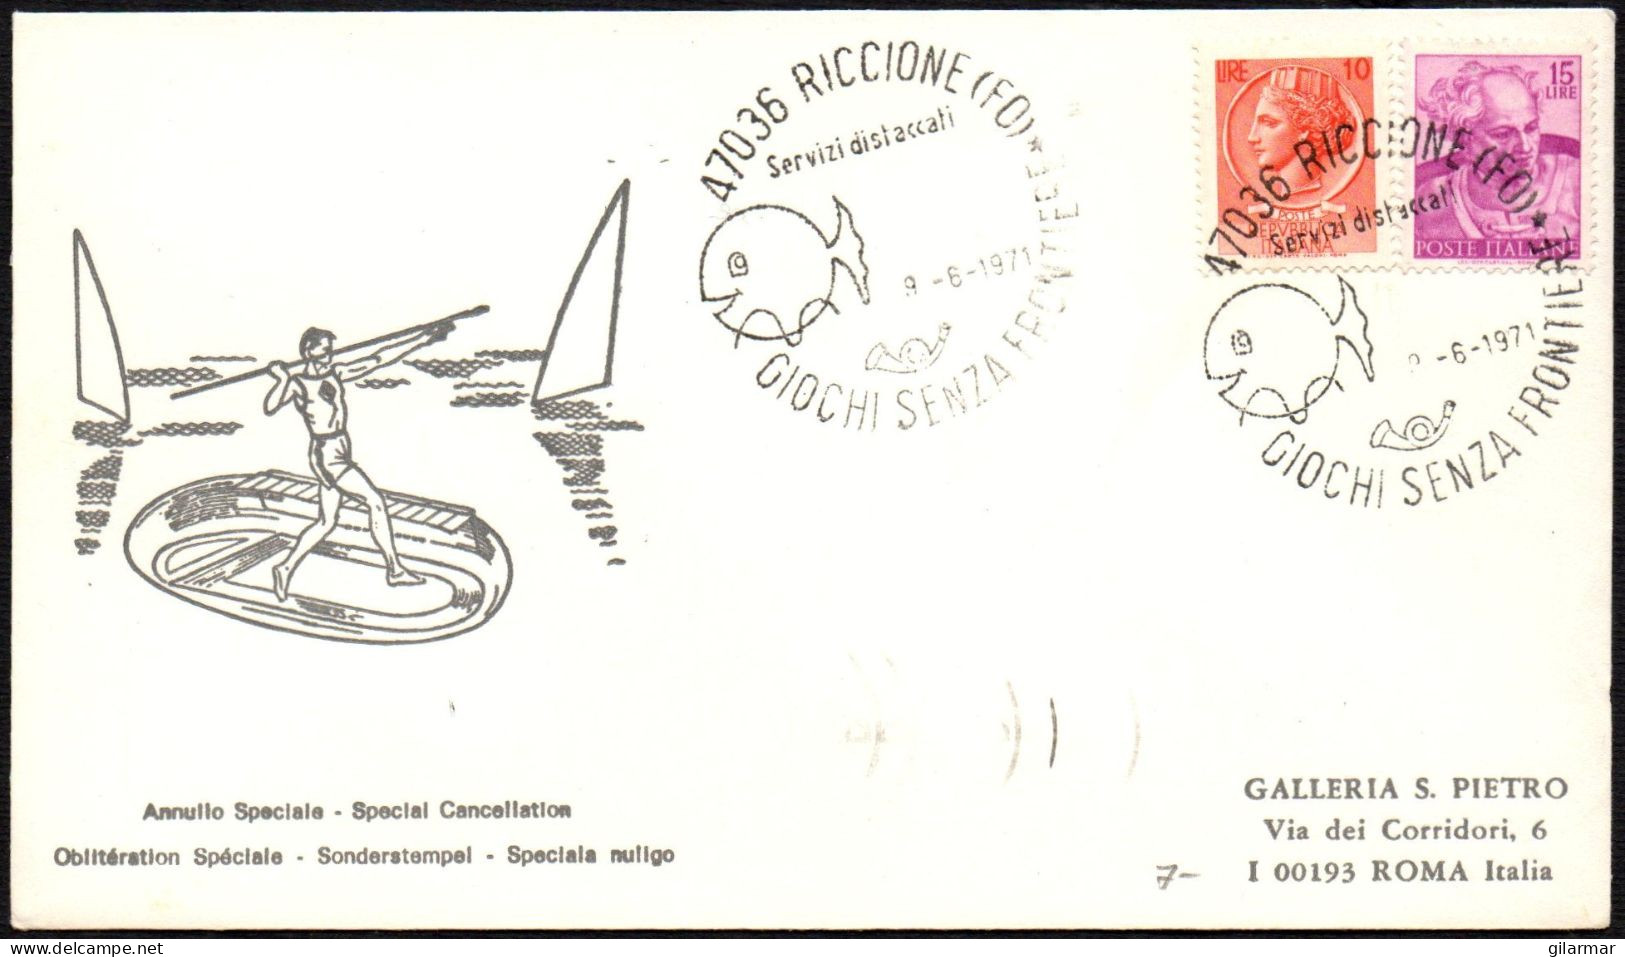 ITALIA RICCIONE (FO) 1971 - GIOCHI SENZA FRONTIERE - BUSTA VIAGGIATA - BOLLO ARRIVO ROMA RISPARMIO POSTALE - M - Unclassified